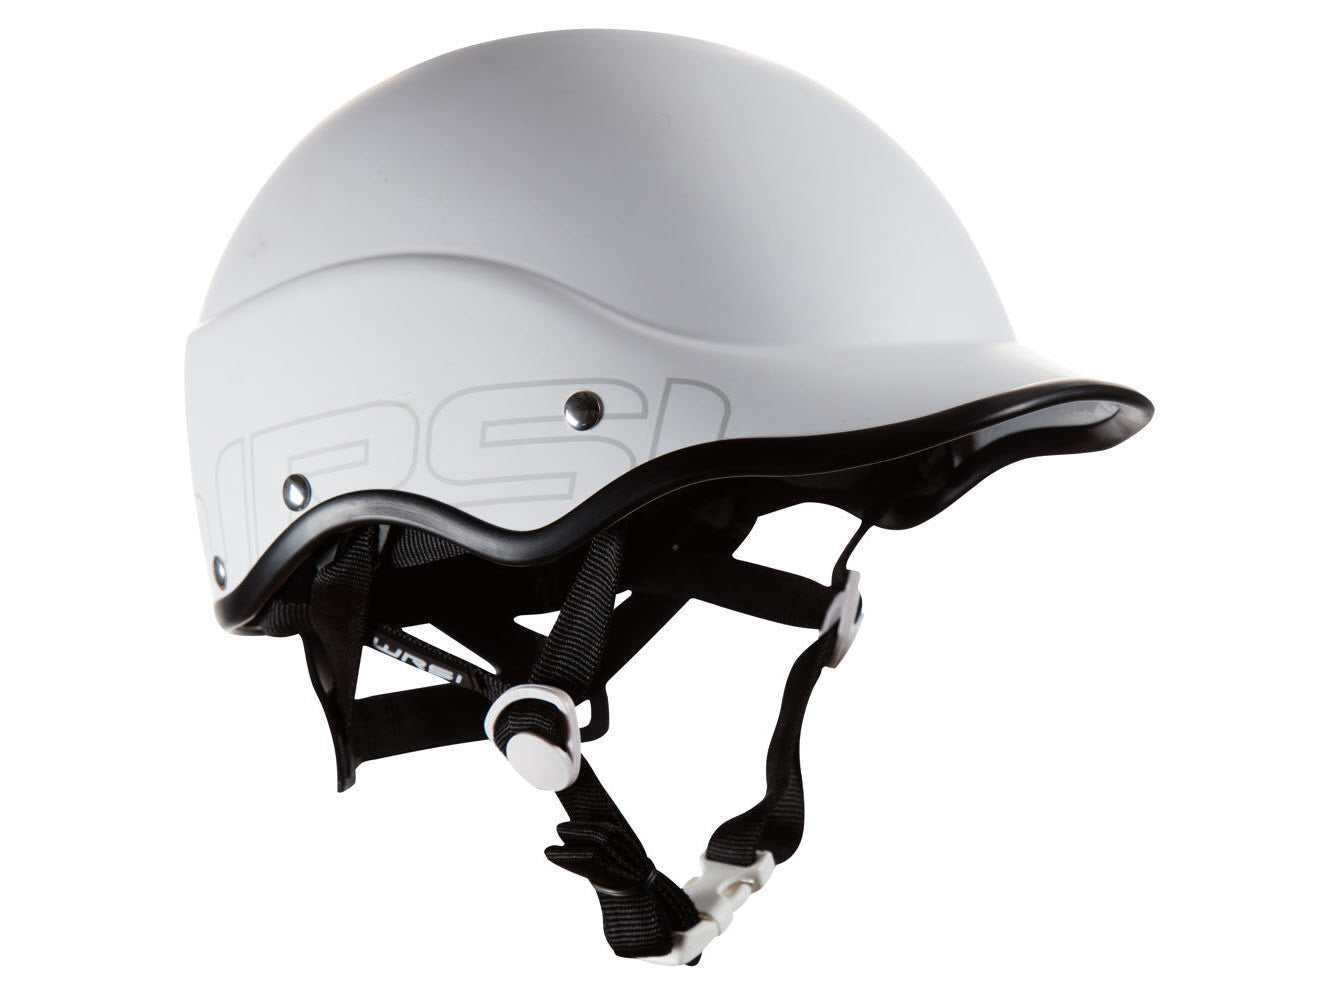 WRSI Trident Composite Helmet in Ghost White